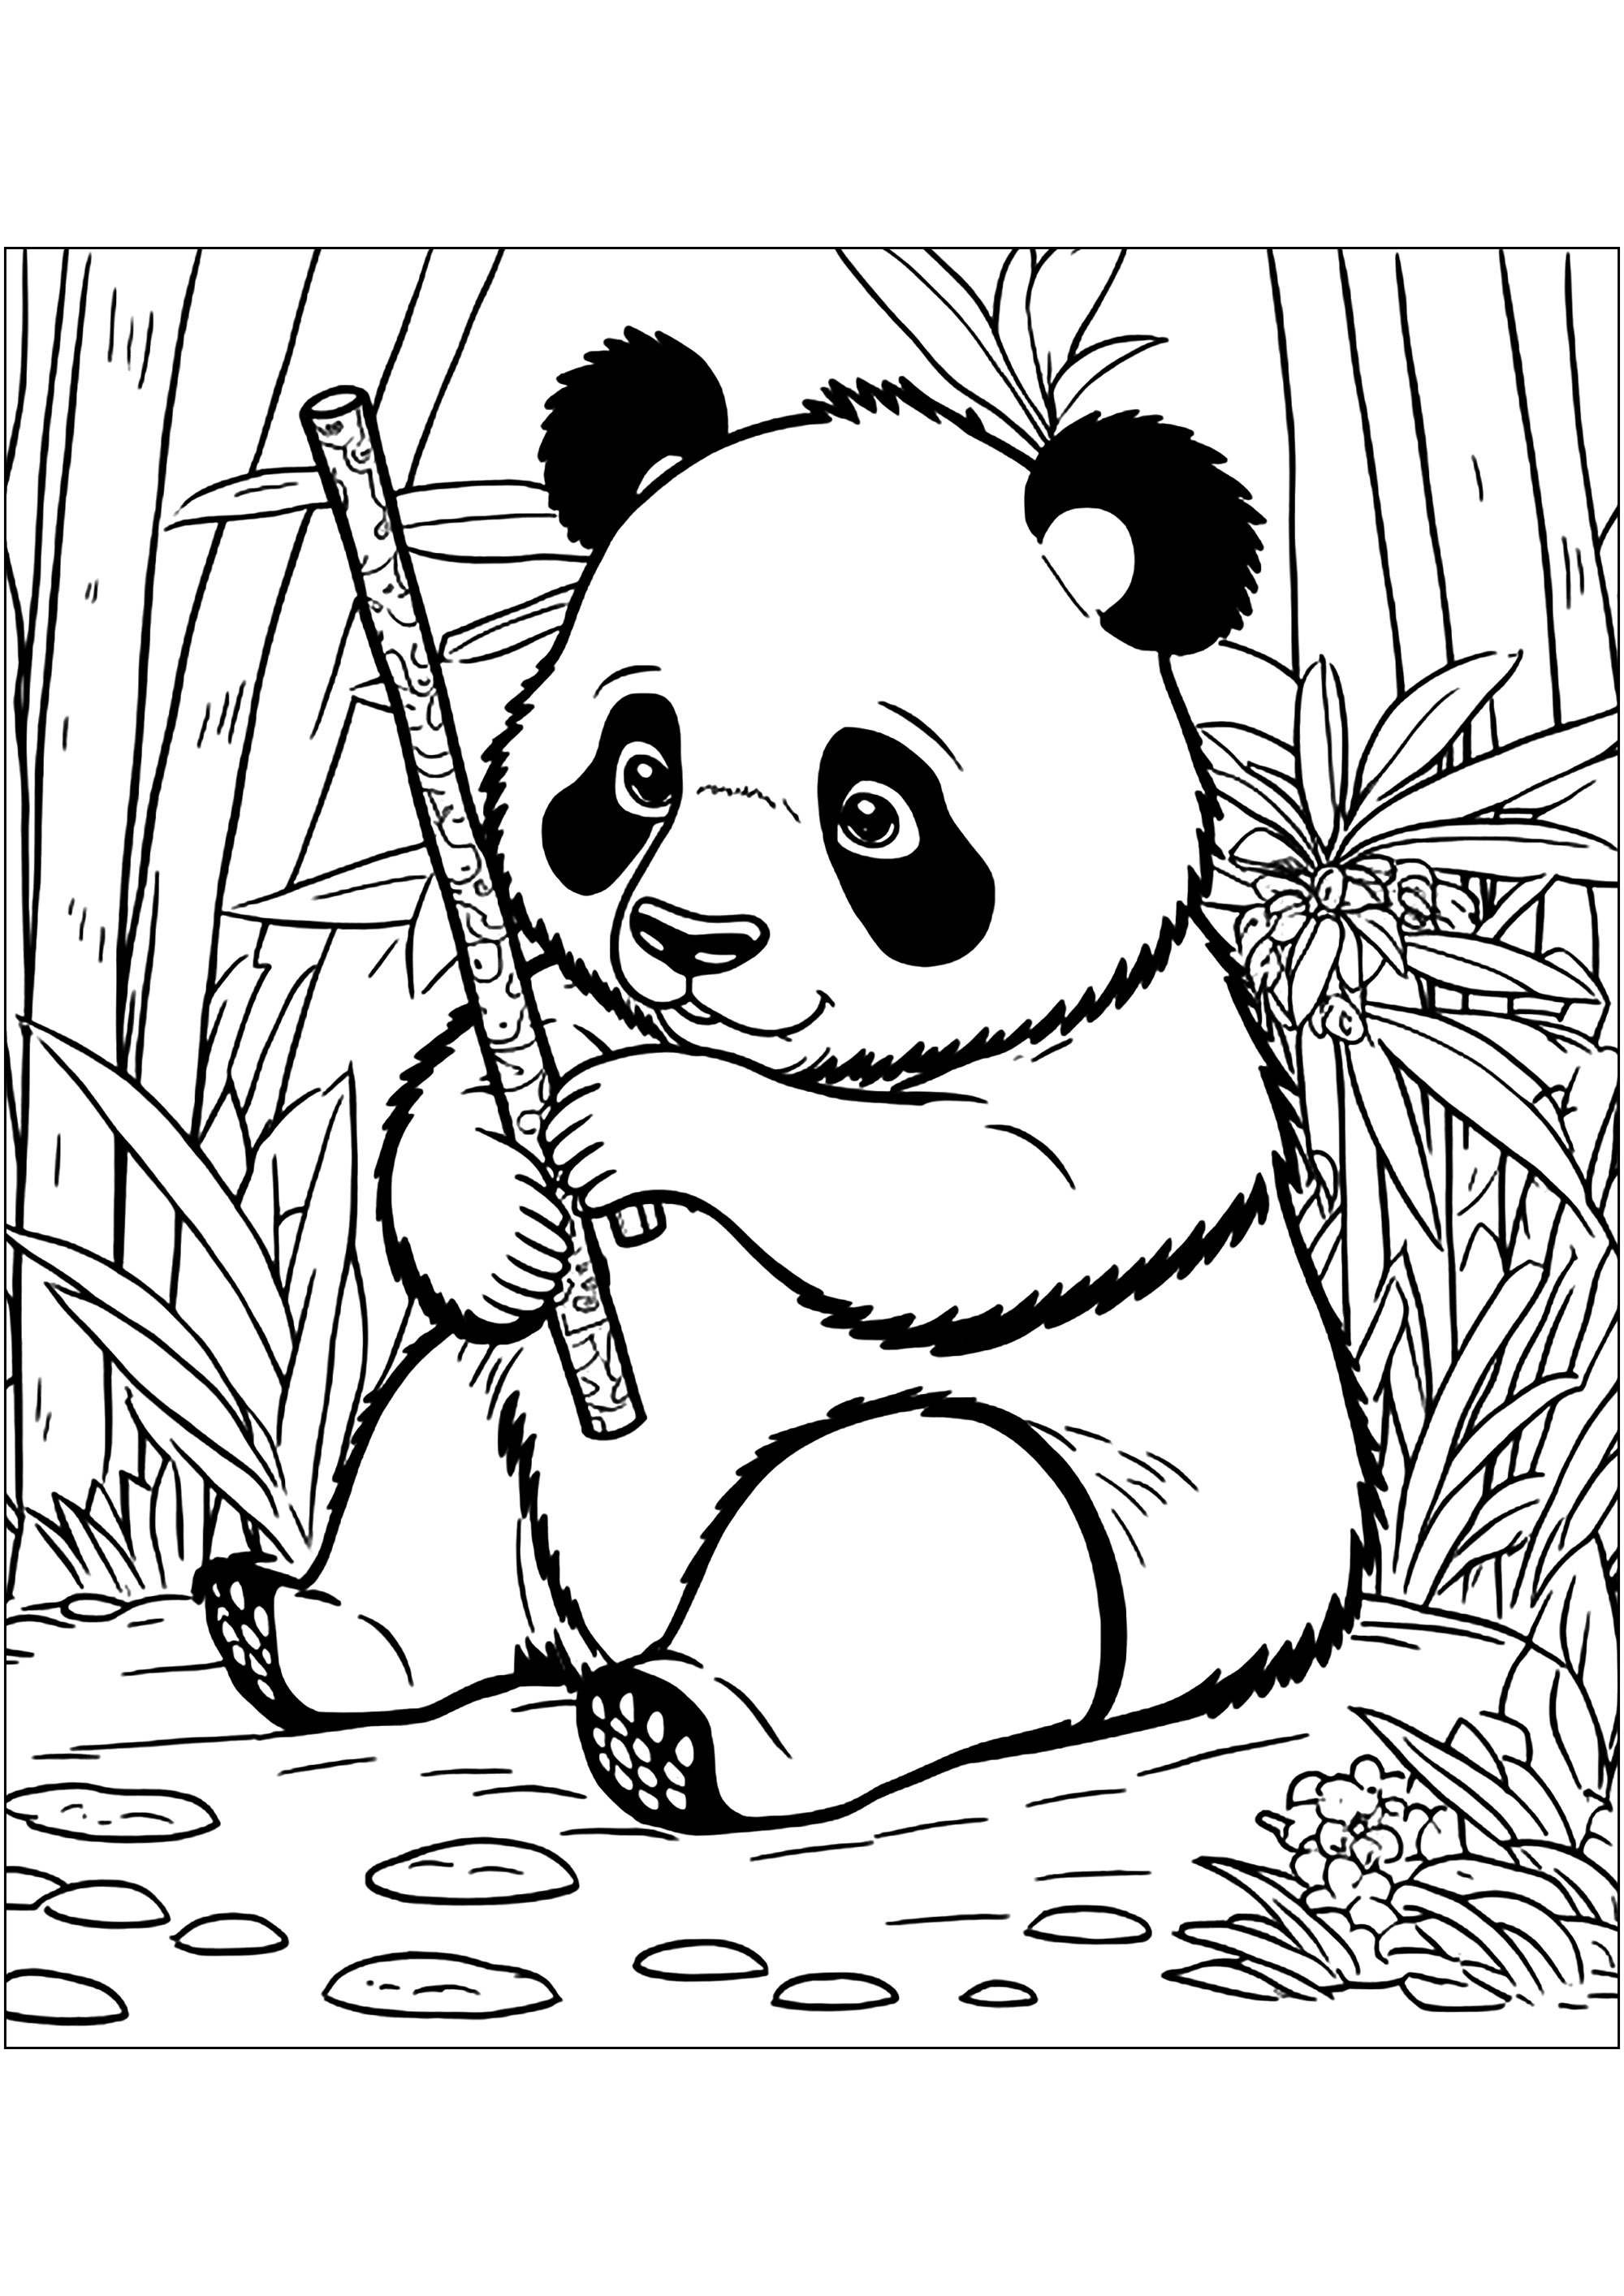 Cute Panda eating bamboo